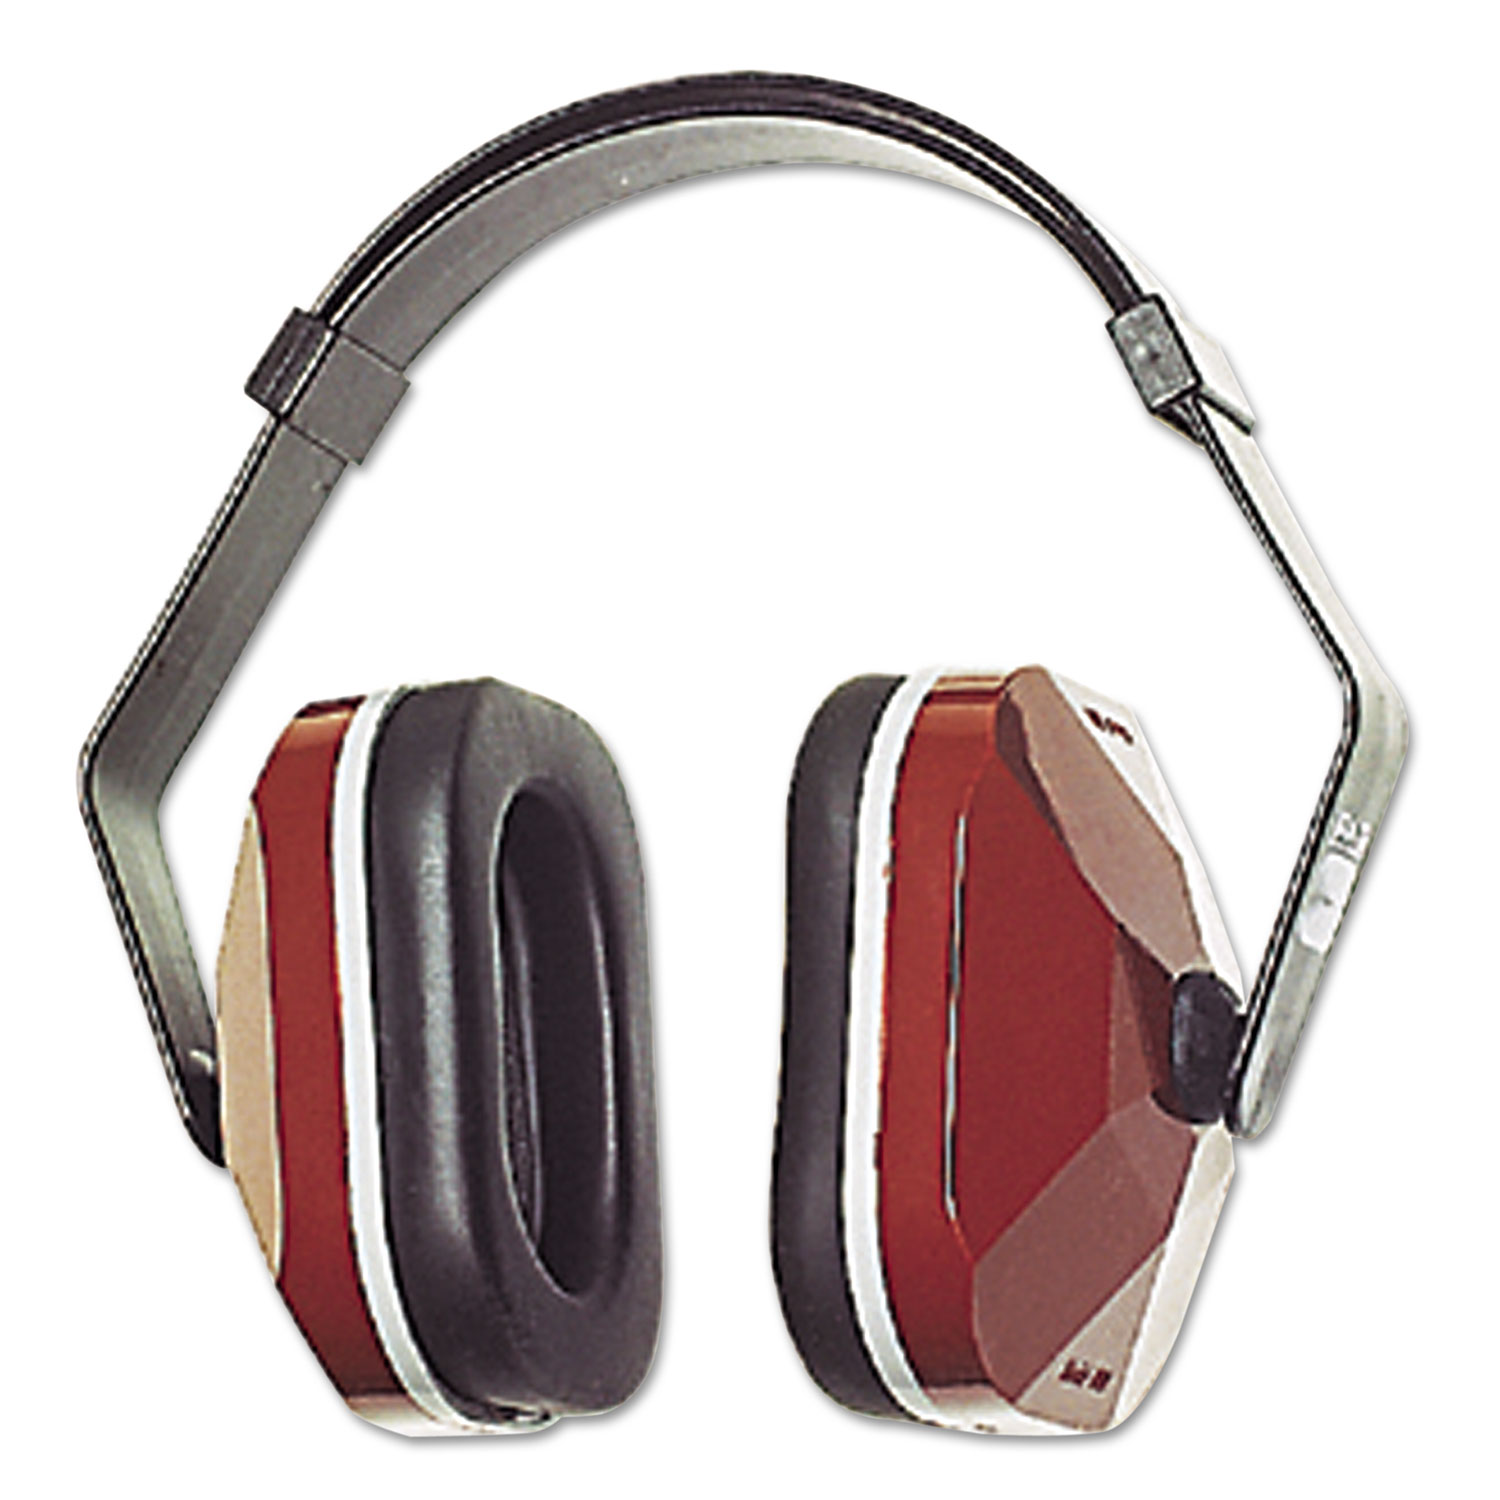 EAR Model 1000 Earmuffs, 20NRR, Maroon/Black